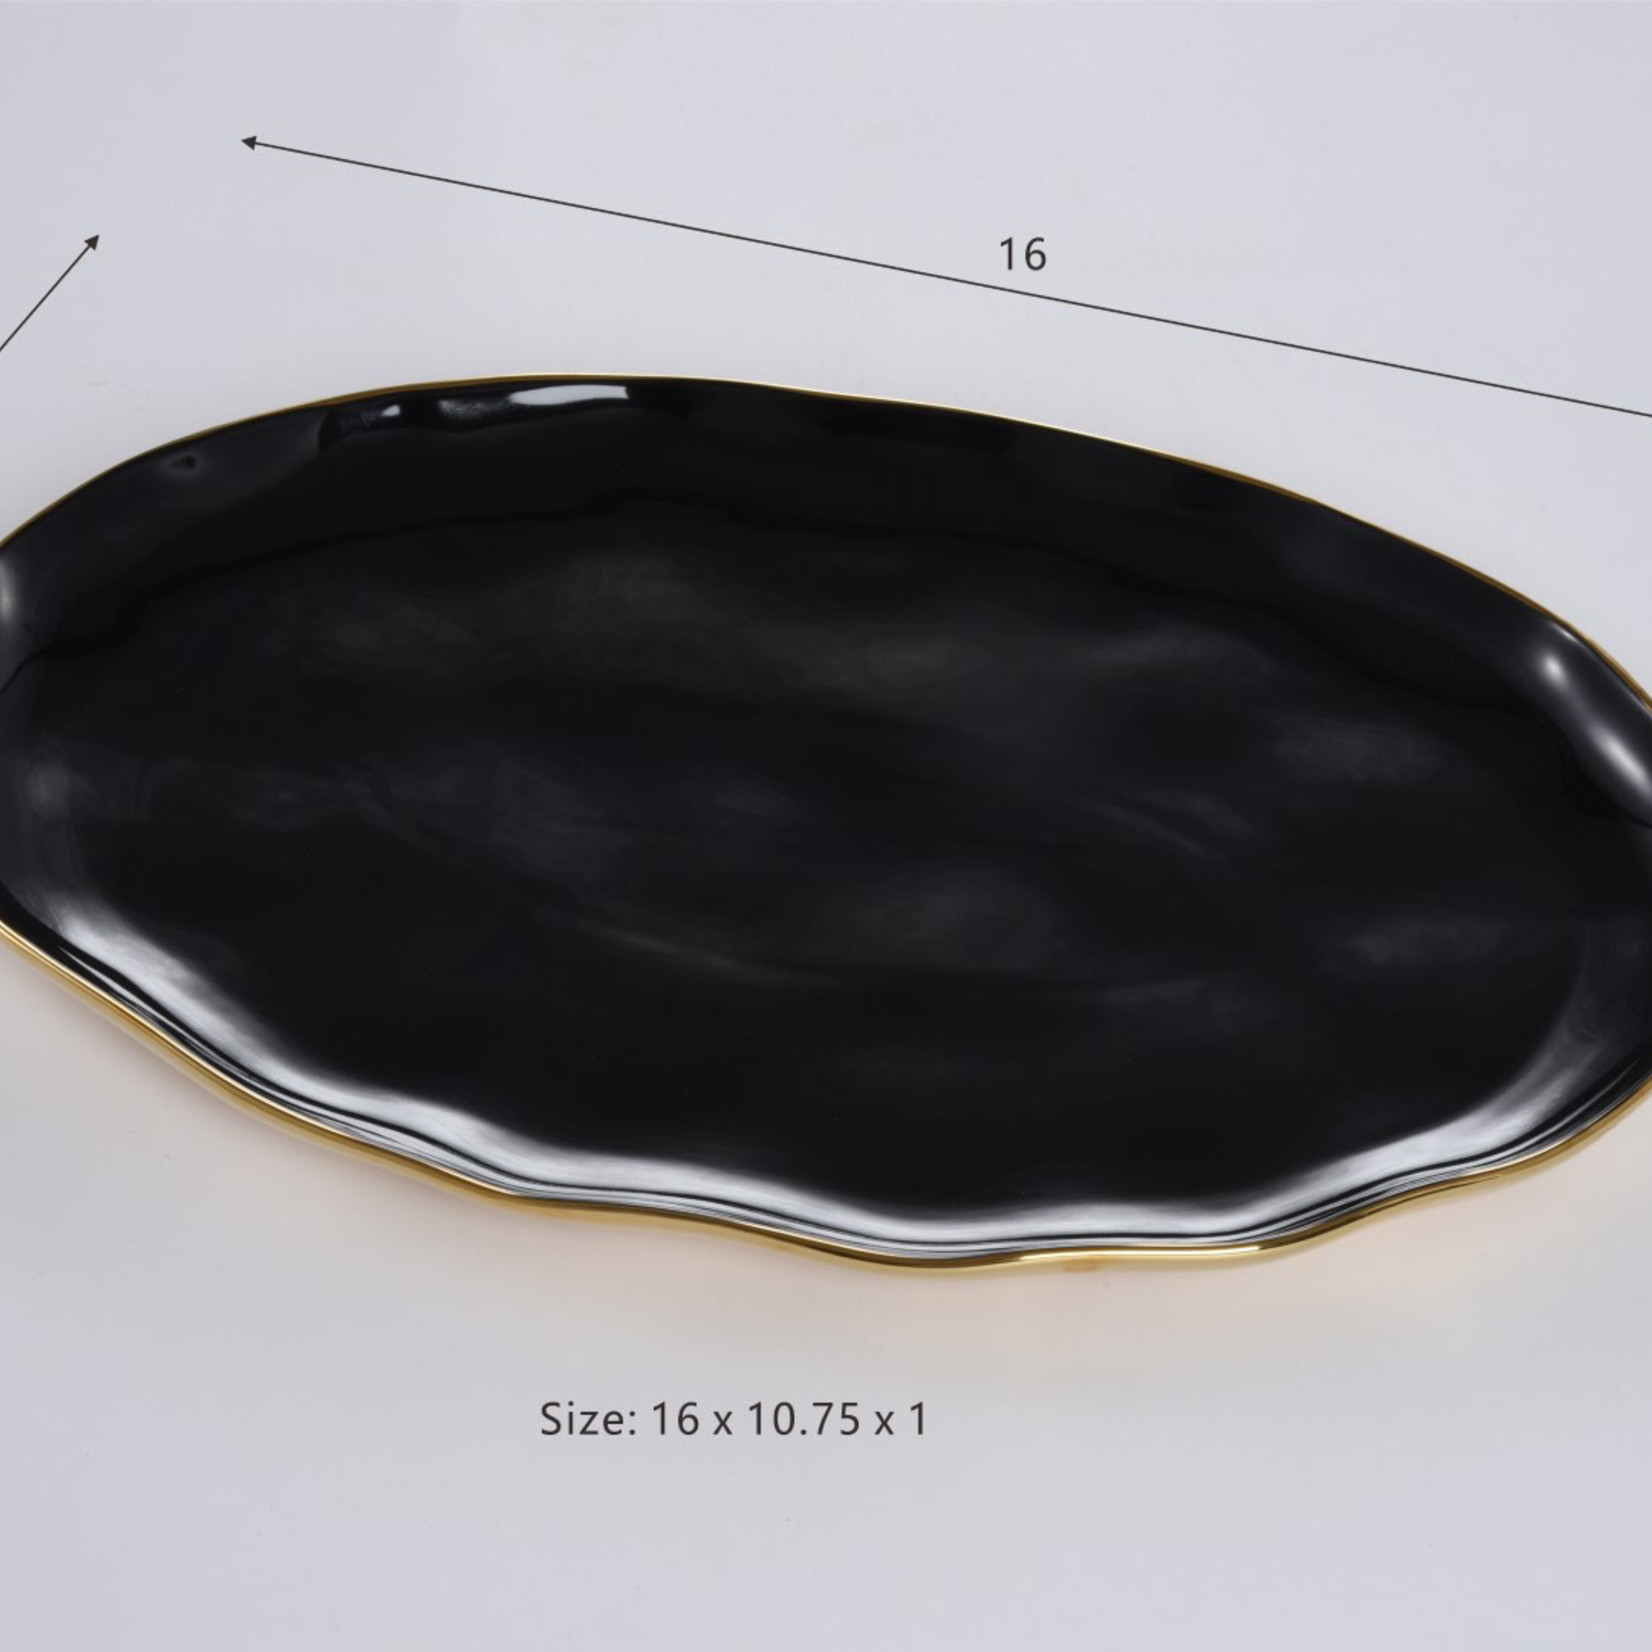 Pampa Bay Oval Platter - Black/Gold